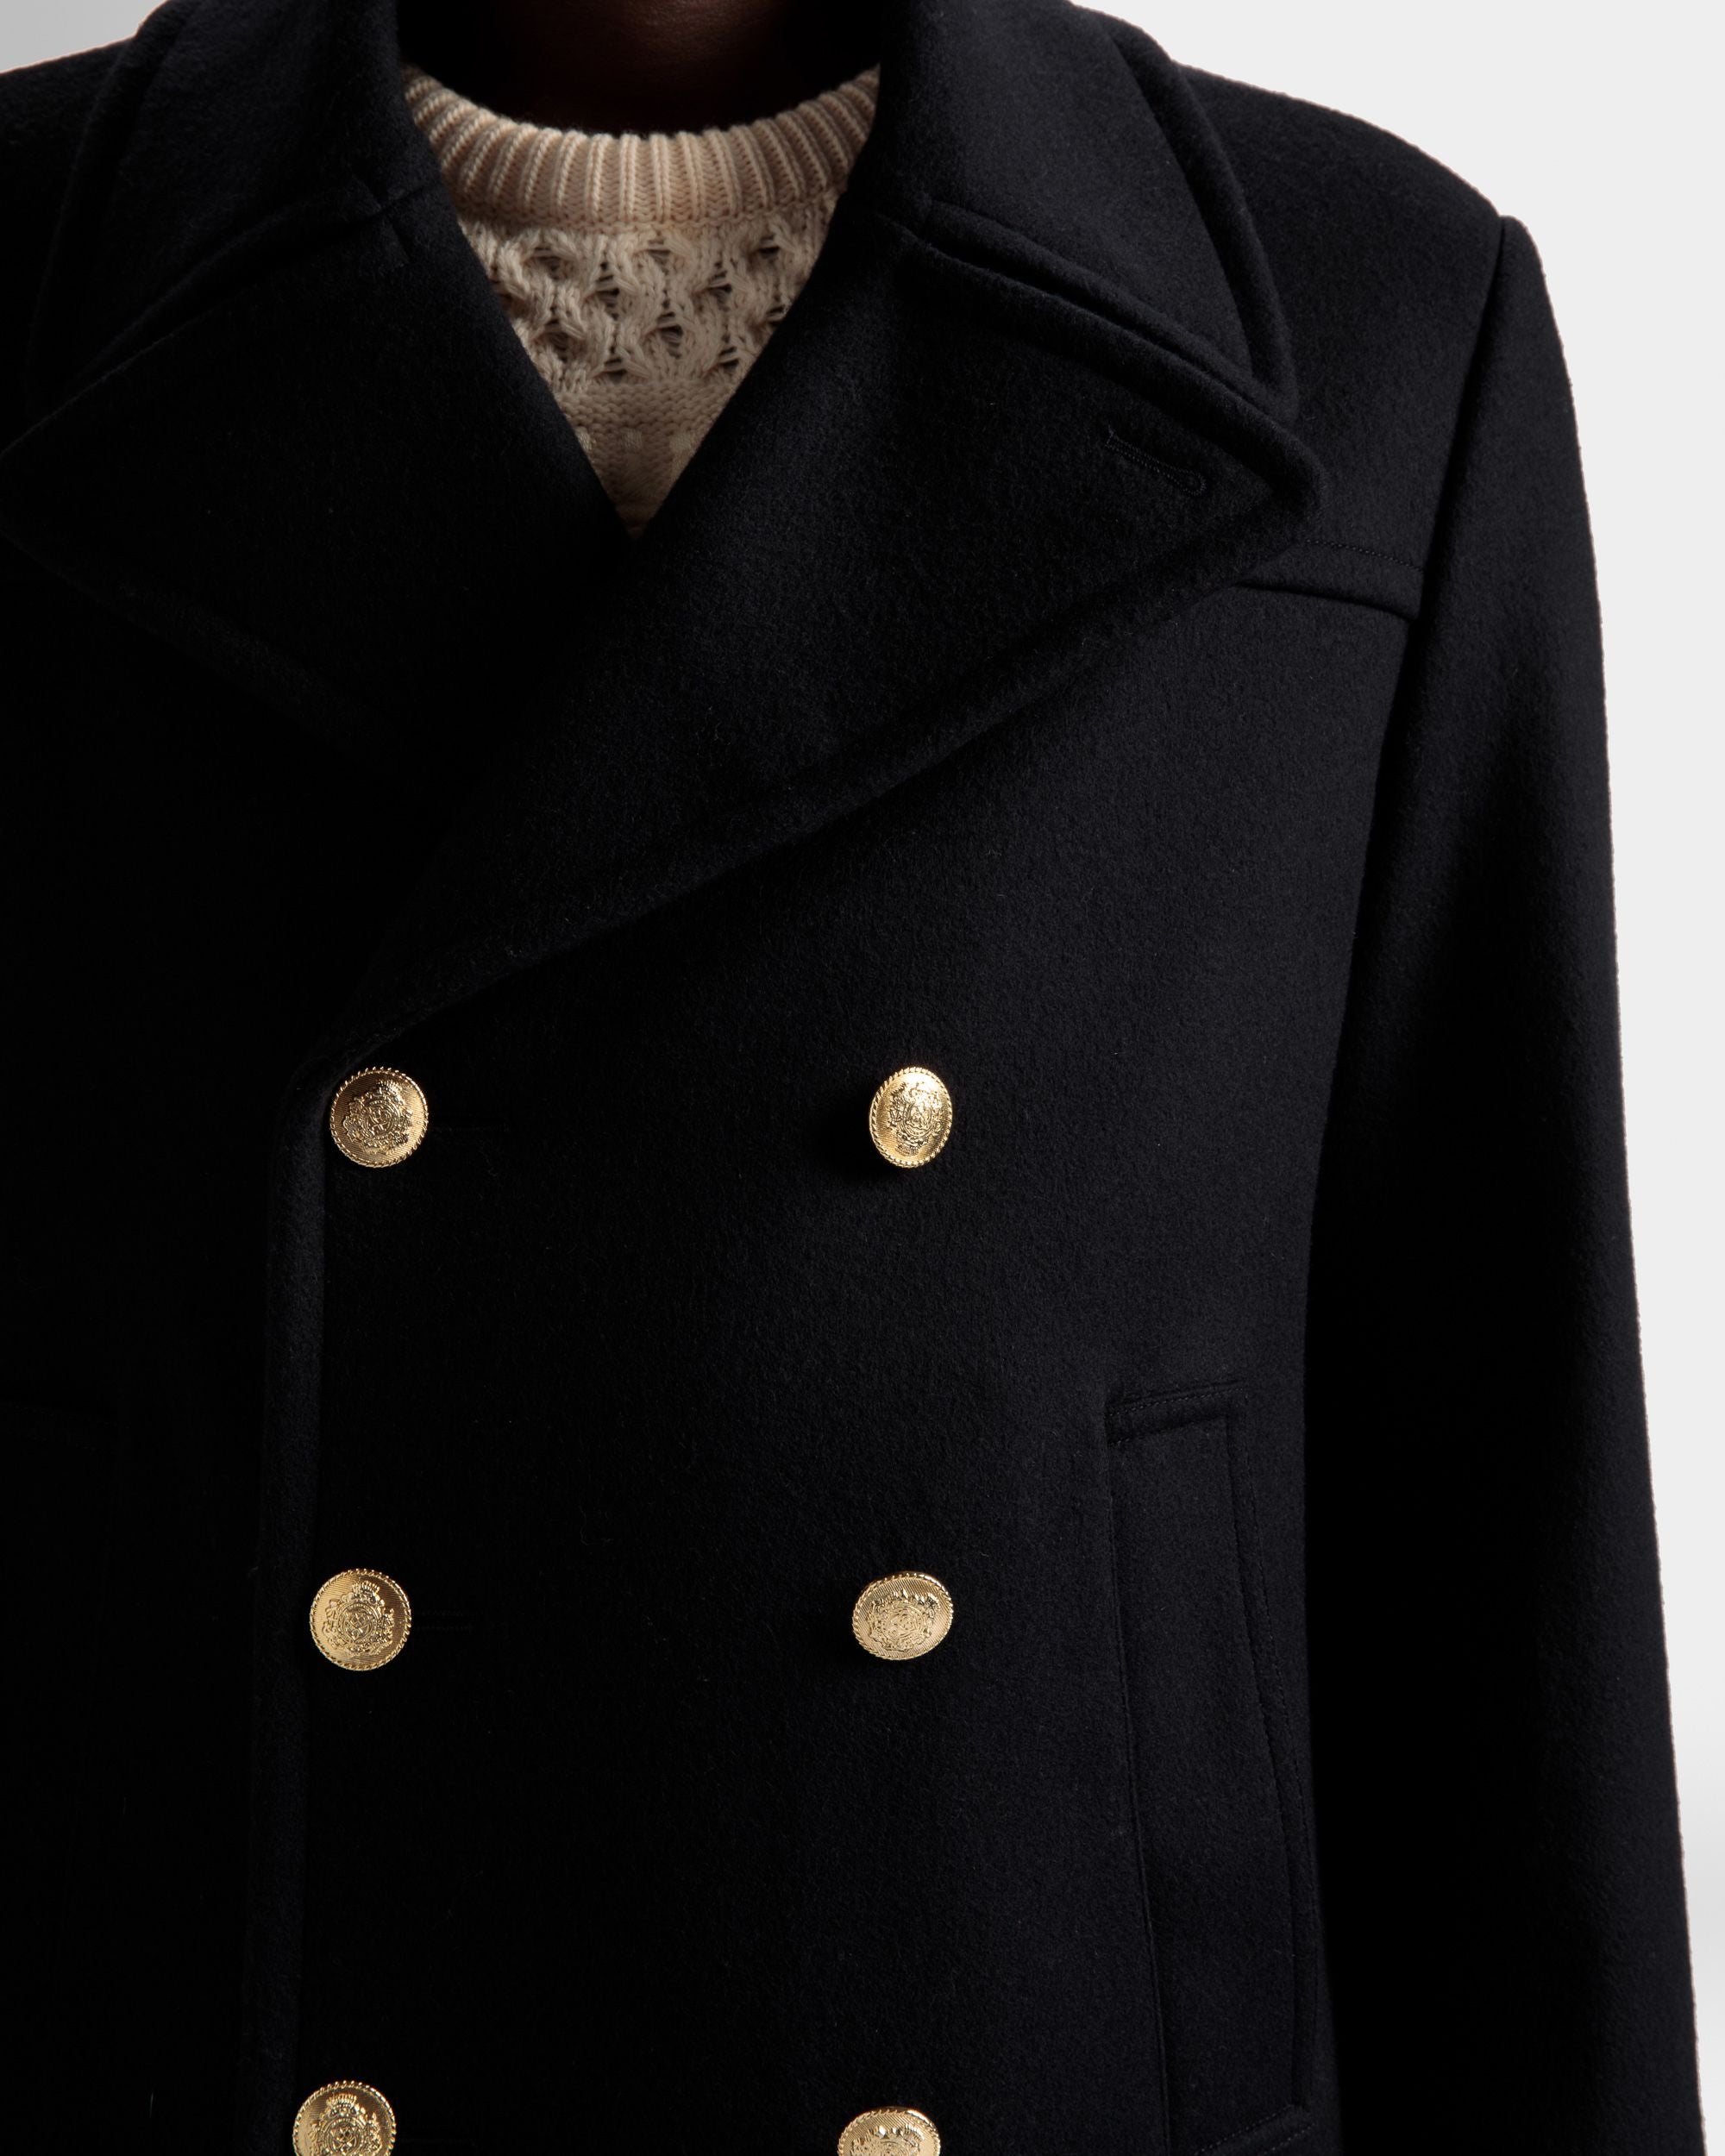 Zweireihiger Mantel | Jacken und Mäntel für Herren | Marineblaues Wollgemisch | Bally | Model getragen Detail